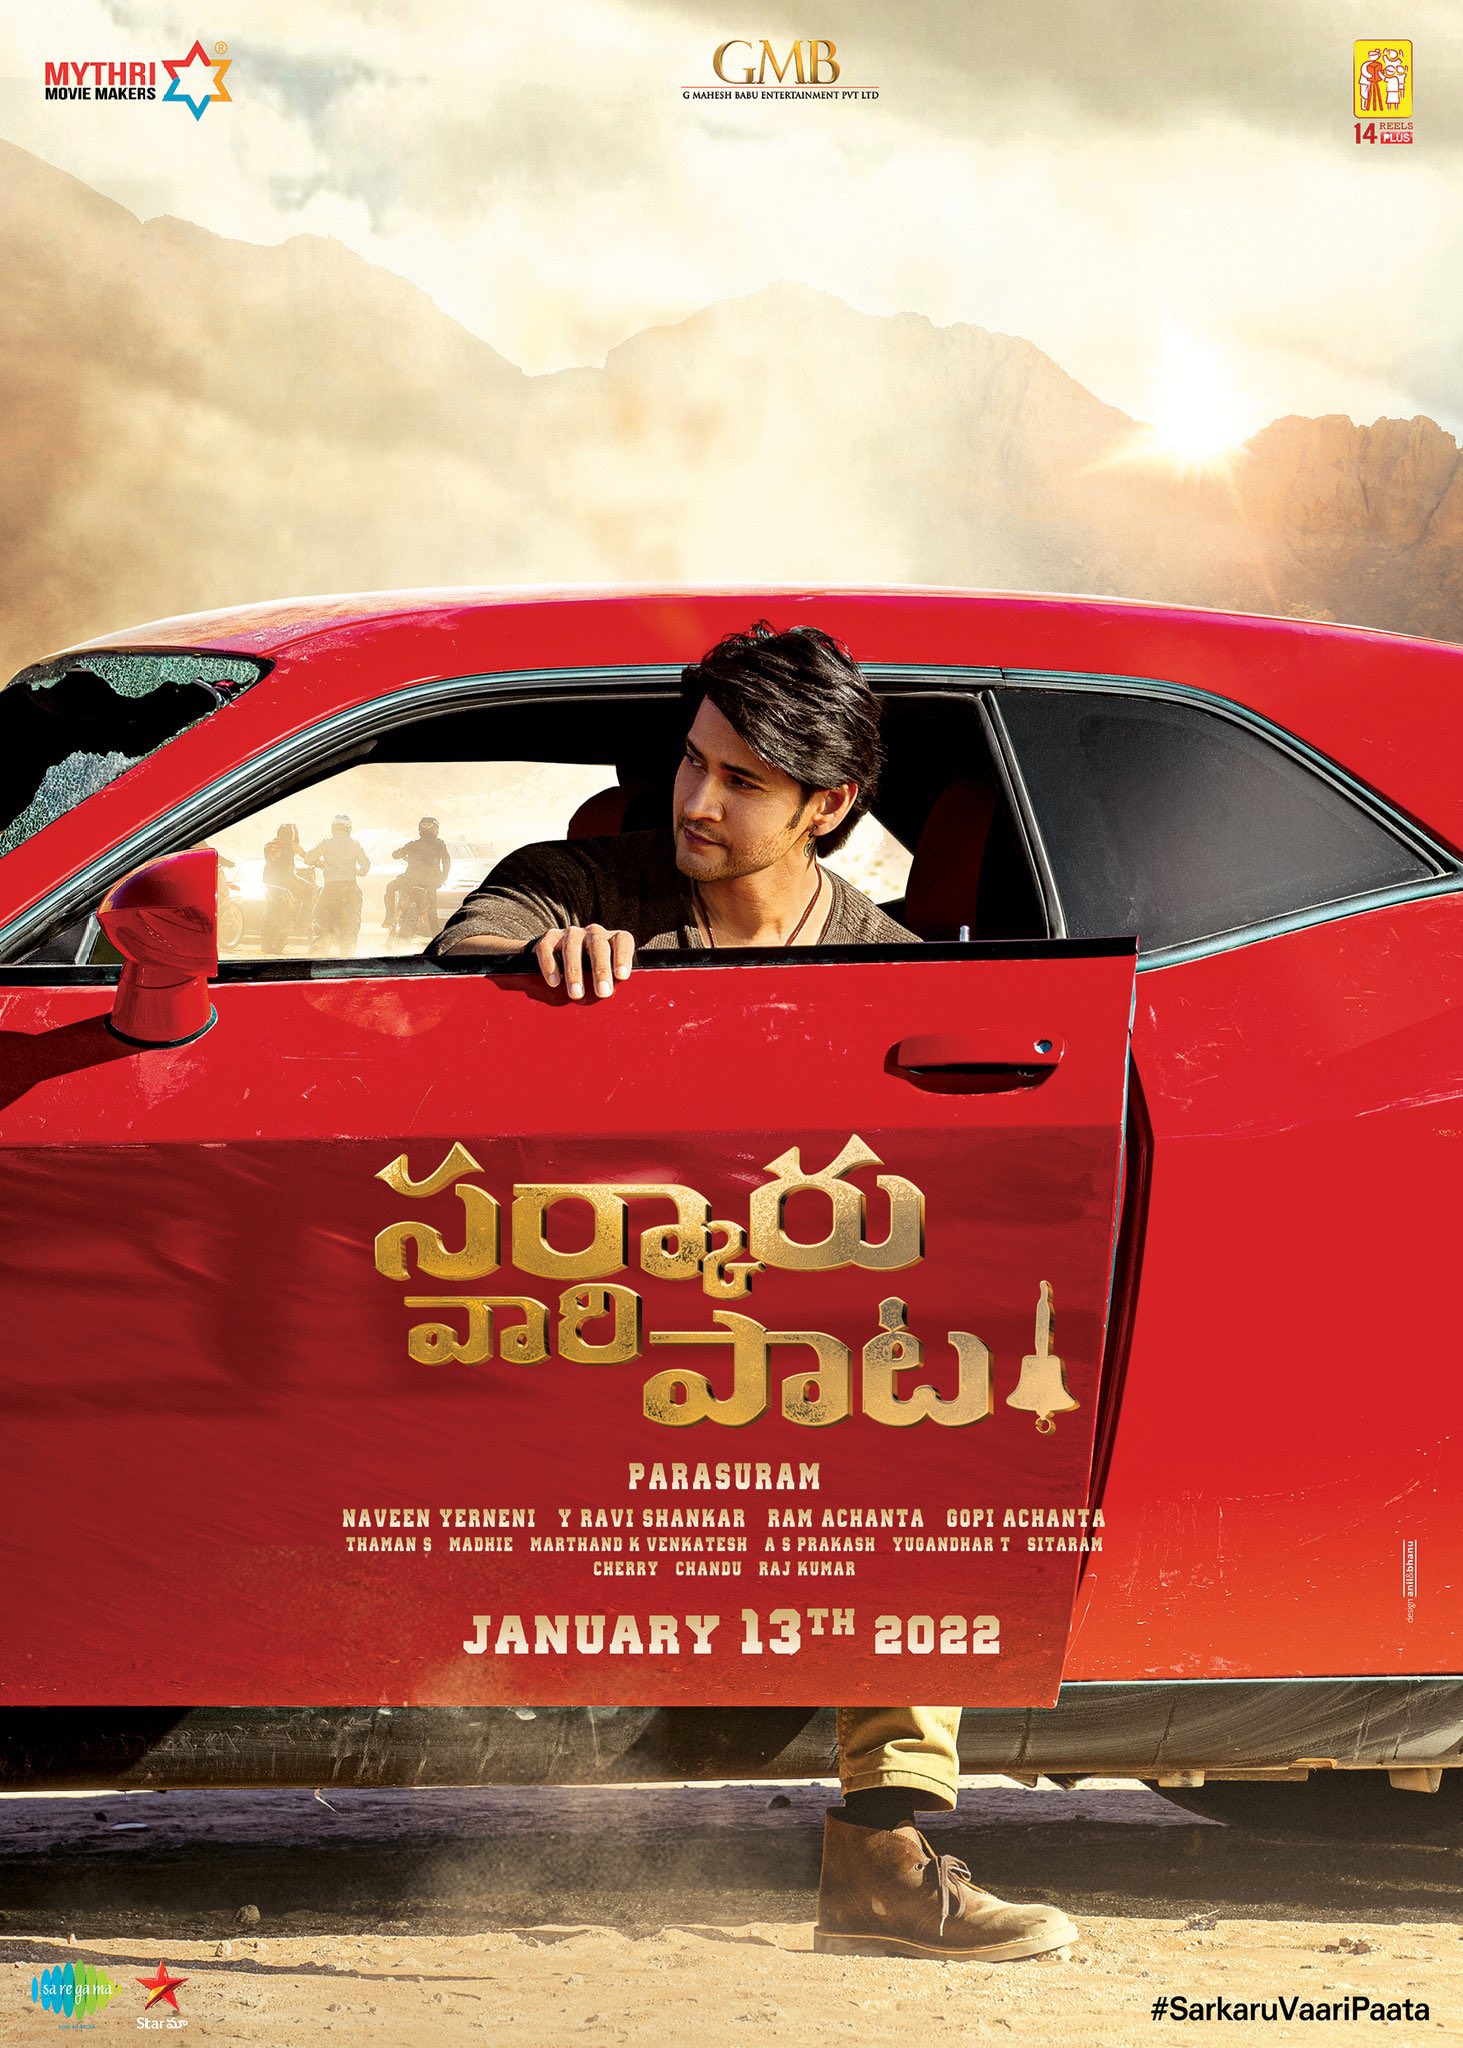 Sarkaru Vaari Paata is a Telugu movie